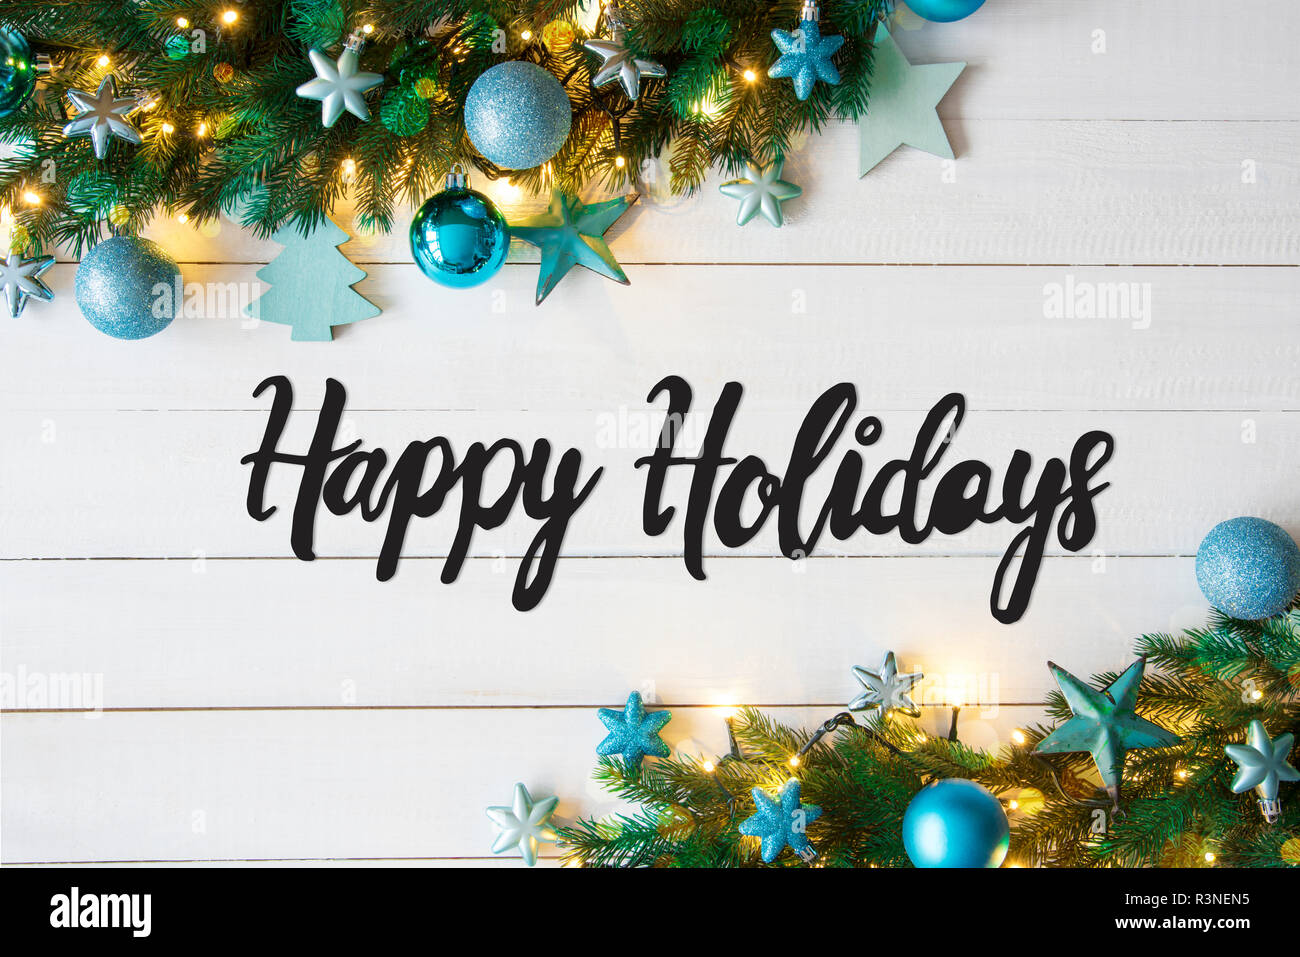 Weihnachten Banner mit englischen Kalligraphie frohe Feiertage. Tanne Baum mit blauen Kugeln und Weihnachtsdekoration. Weiße Holz- Hintergrund und Stockfoto